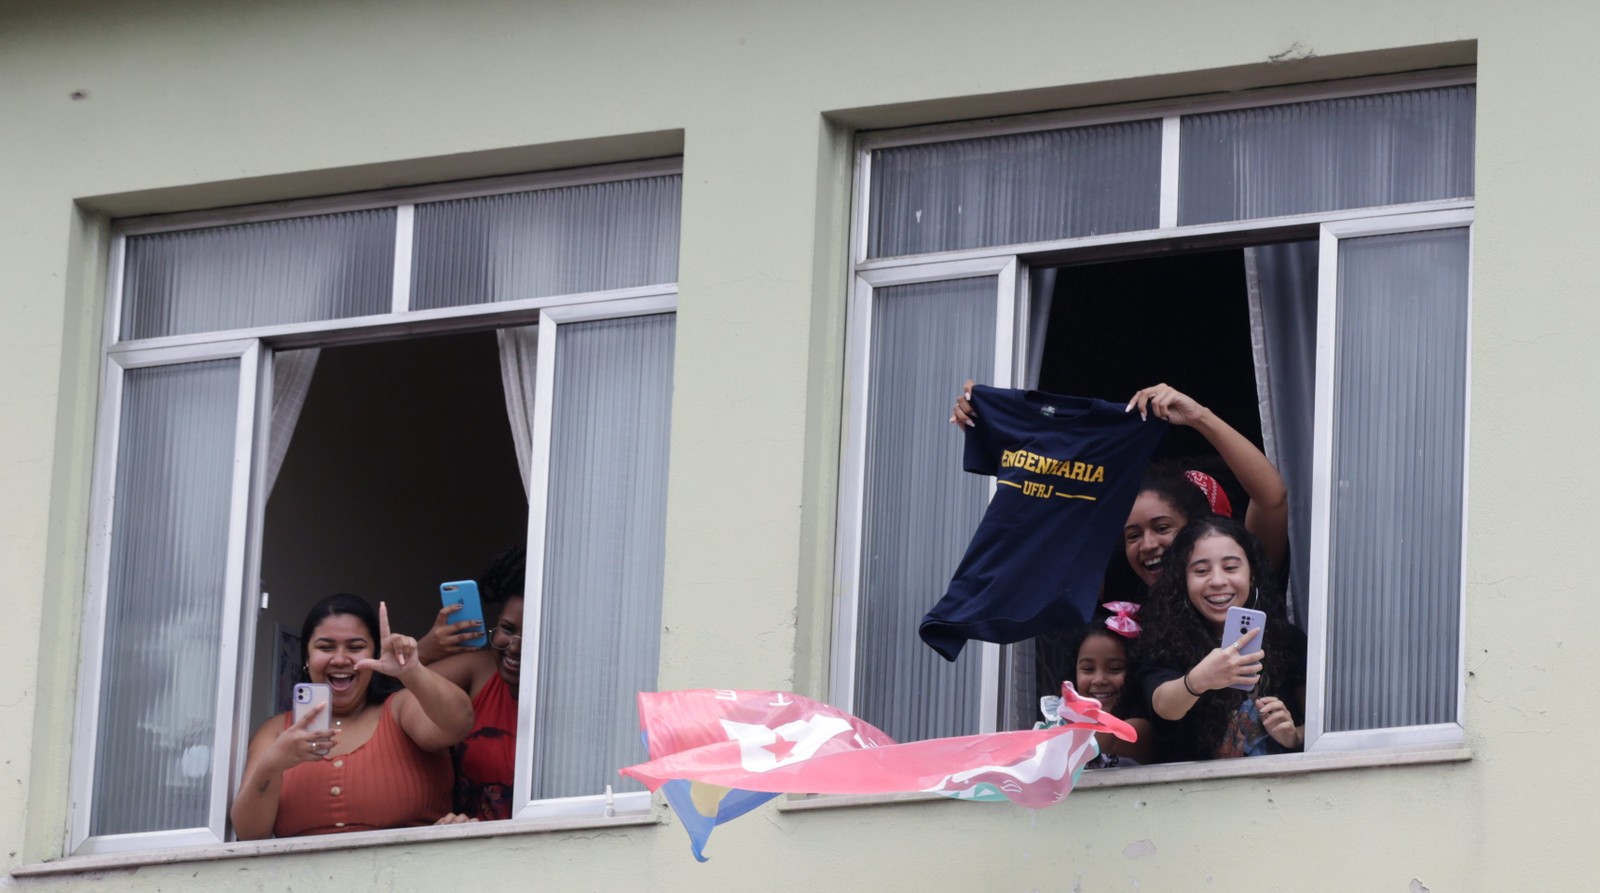 Moradora Complexo do Alemão exibe camisa do curso de Engenharia da UFRJ em apoio à candidatura de Lula — Foto: Domingos Peixoto/Agência O Globo